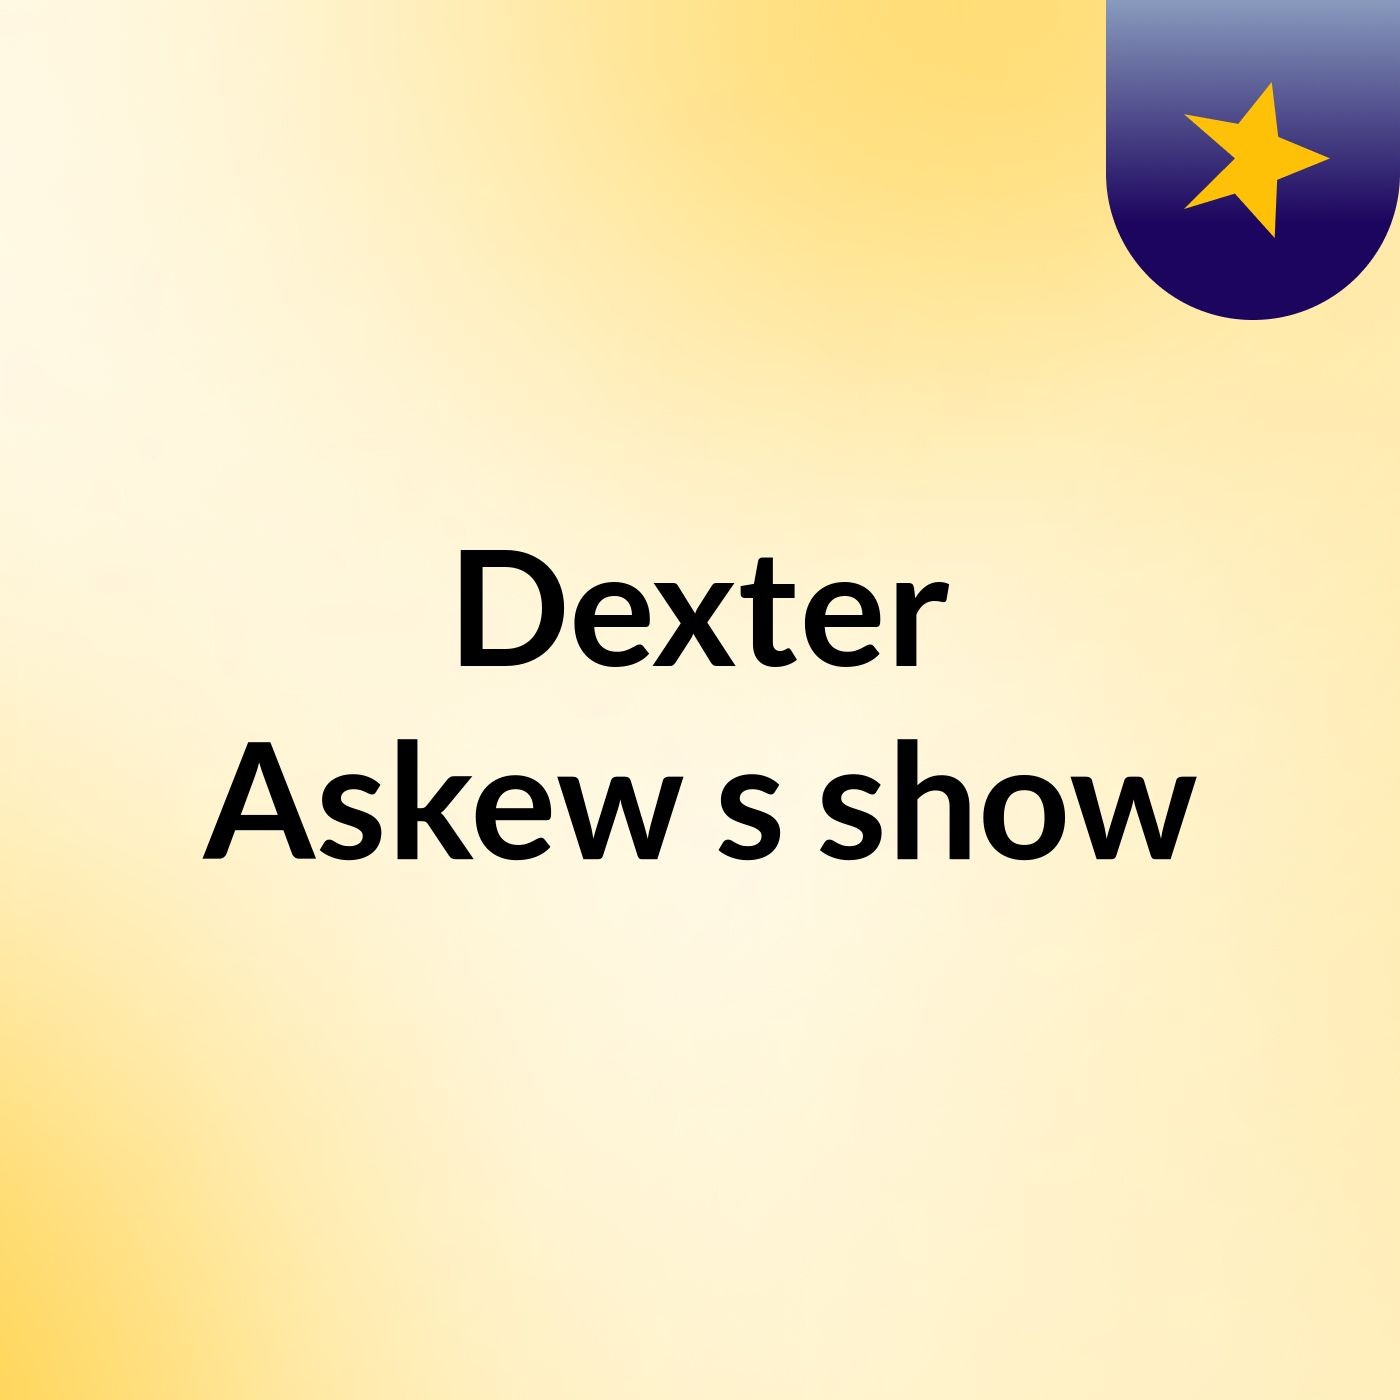 Dexter Askew's show